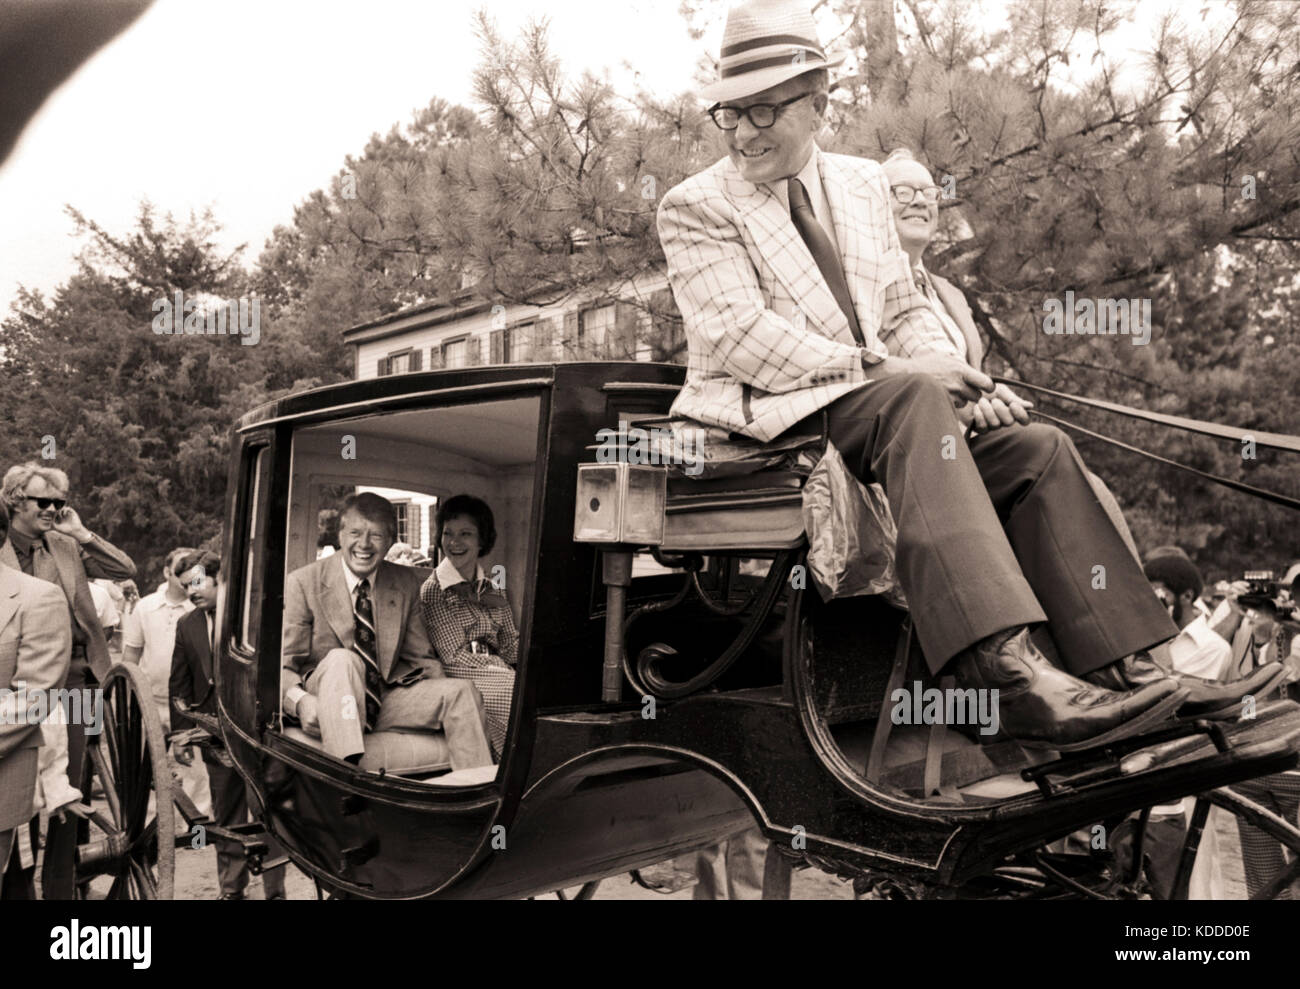 Anlässlich der US Bicentennial am 4. Juli 1976, Kandidat Jimmy Carter; seine Frau Rosalynn; und Tochter, Amy, Fahrt in einem Wagen in den 1850er Jahren Wir Stockfoto